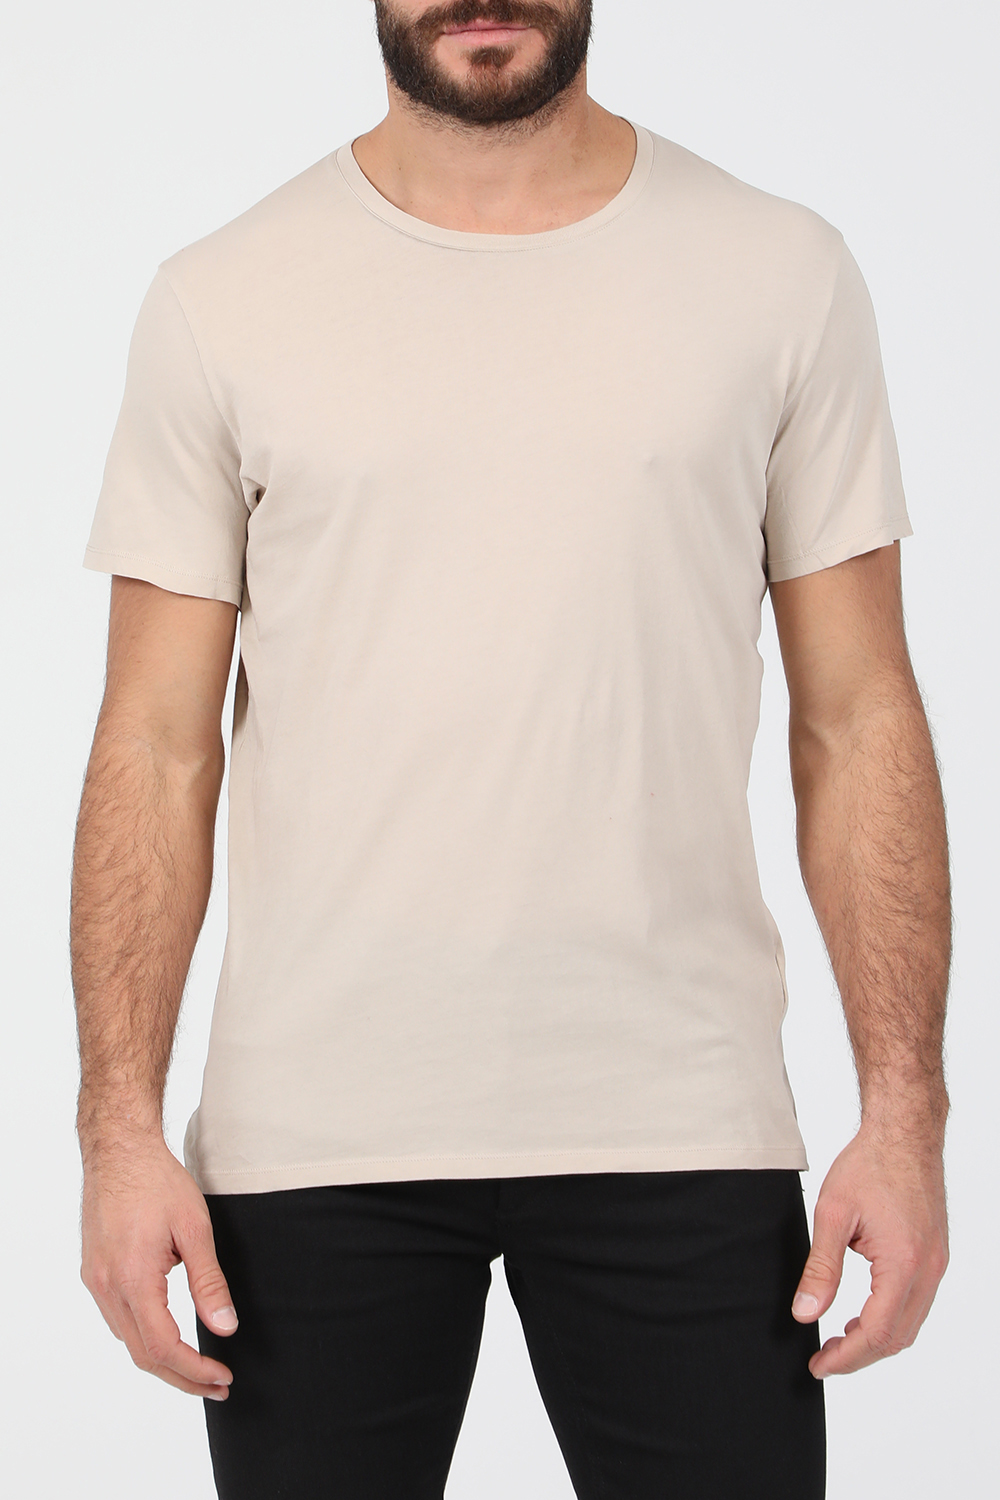 Ανδρικά/Ρούχα/Μπλούζες/Κοντομάνικες AMERICAN VINTAGE - Ανδρική κοντομάνικη μπλούζα AMERICAN VINTAGE μπεζ